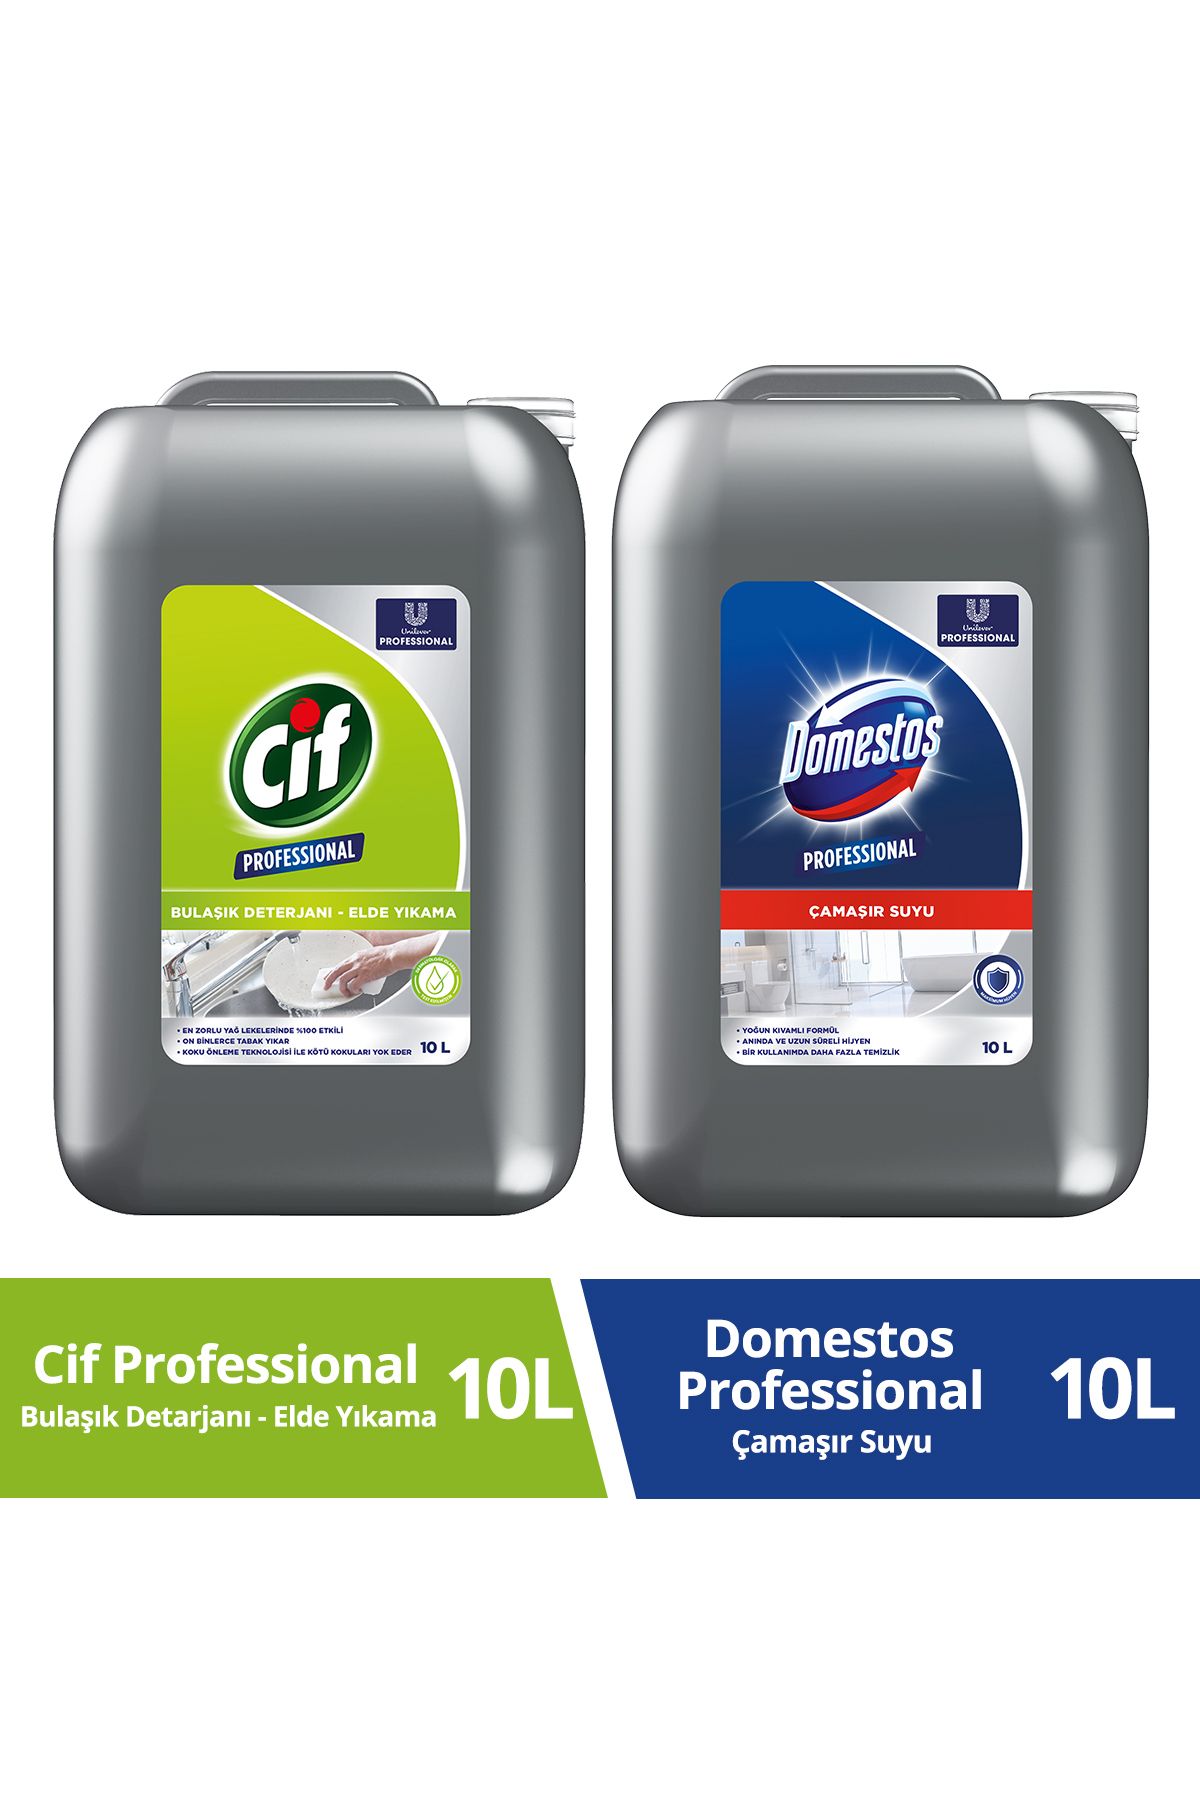 Cif Domestos Professional Çamaşır Suyu 10 L + Cif Professional Bulaşık Deterjanı Elde Yıkama 10 L